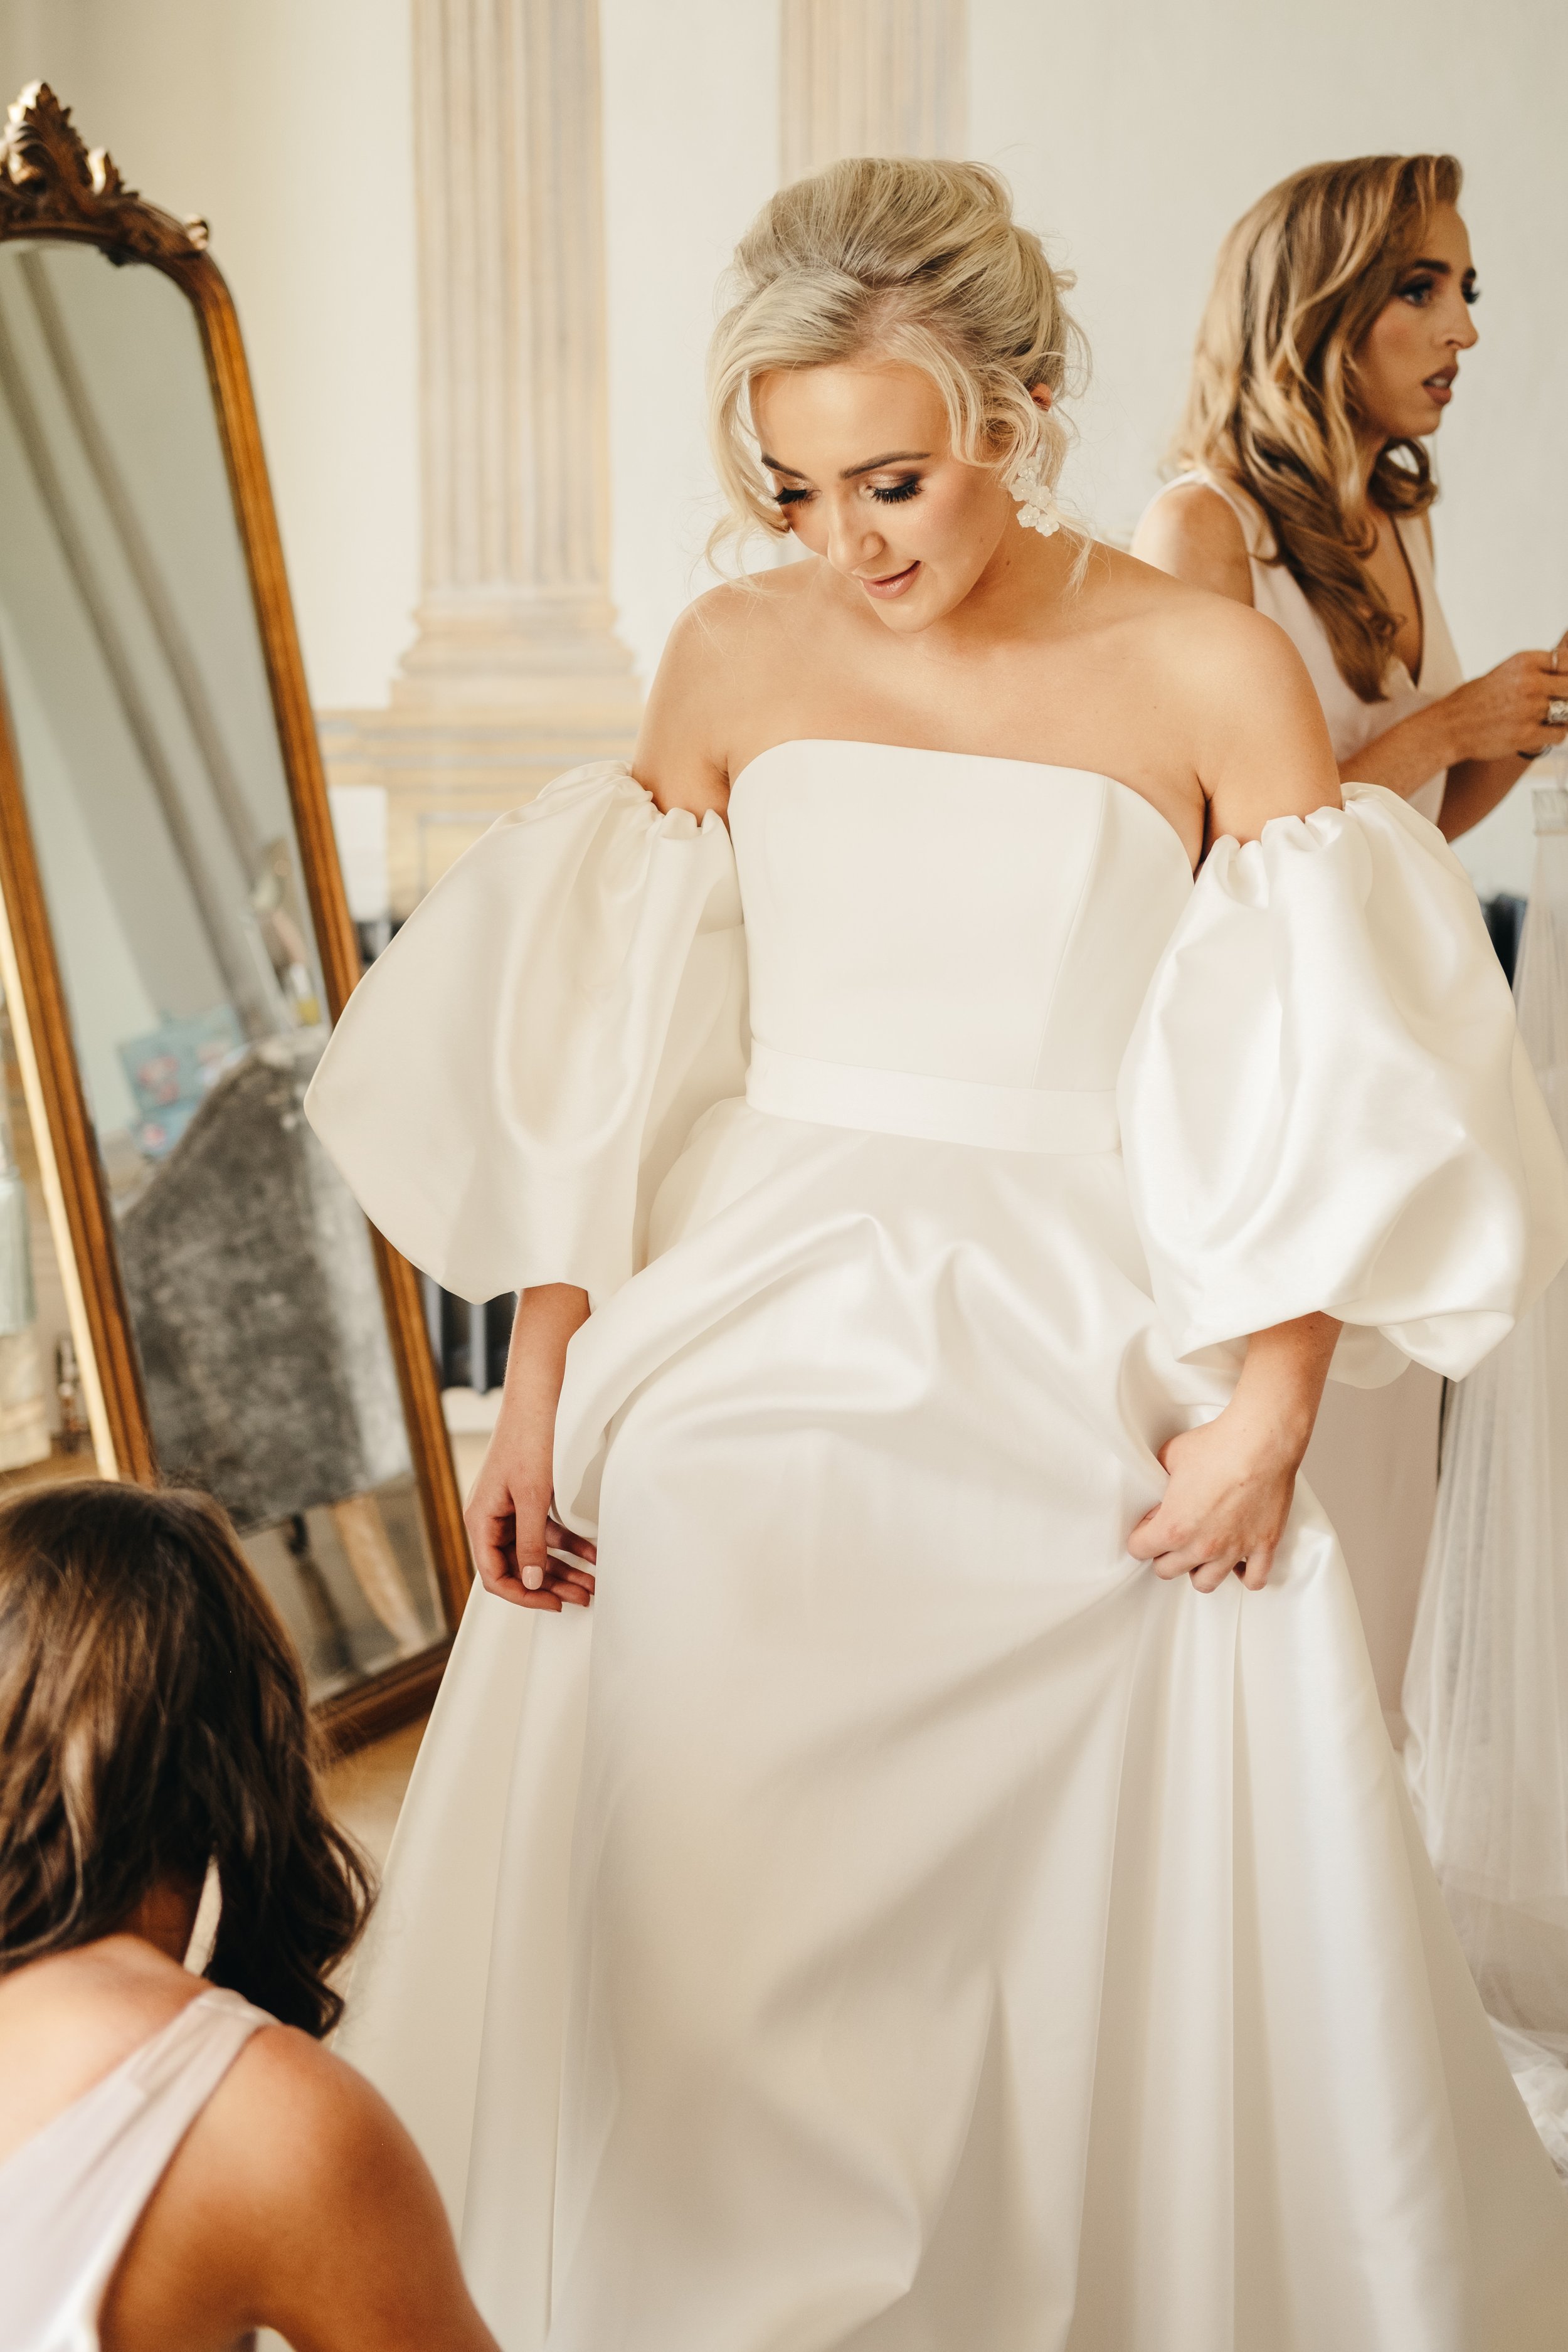 Beautiful bride Tamzen wears the Ellie skirt wedding dress by Halfpenny London